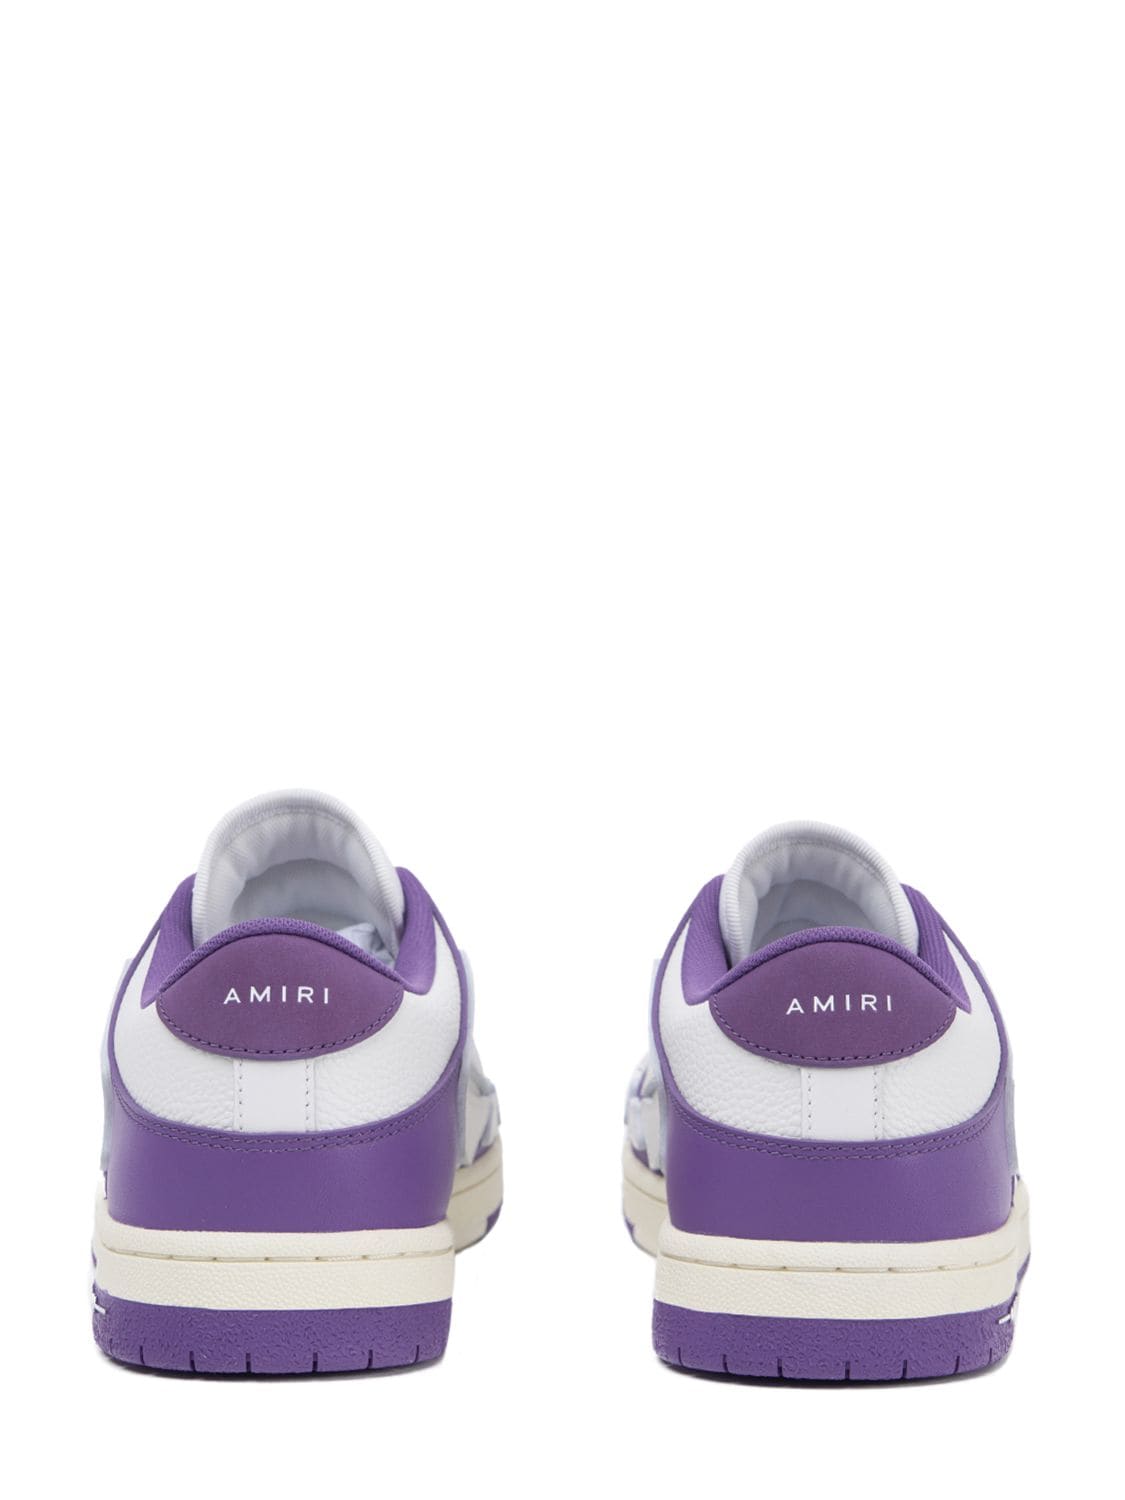 Amiri Skeleton Low Sneakers In Purple | ModeSens